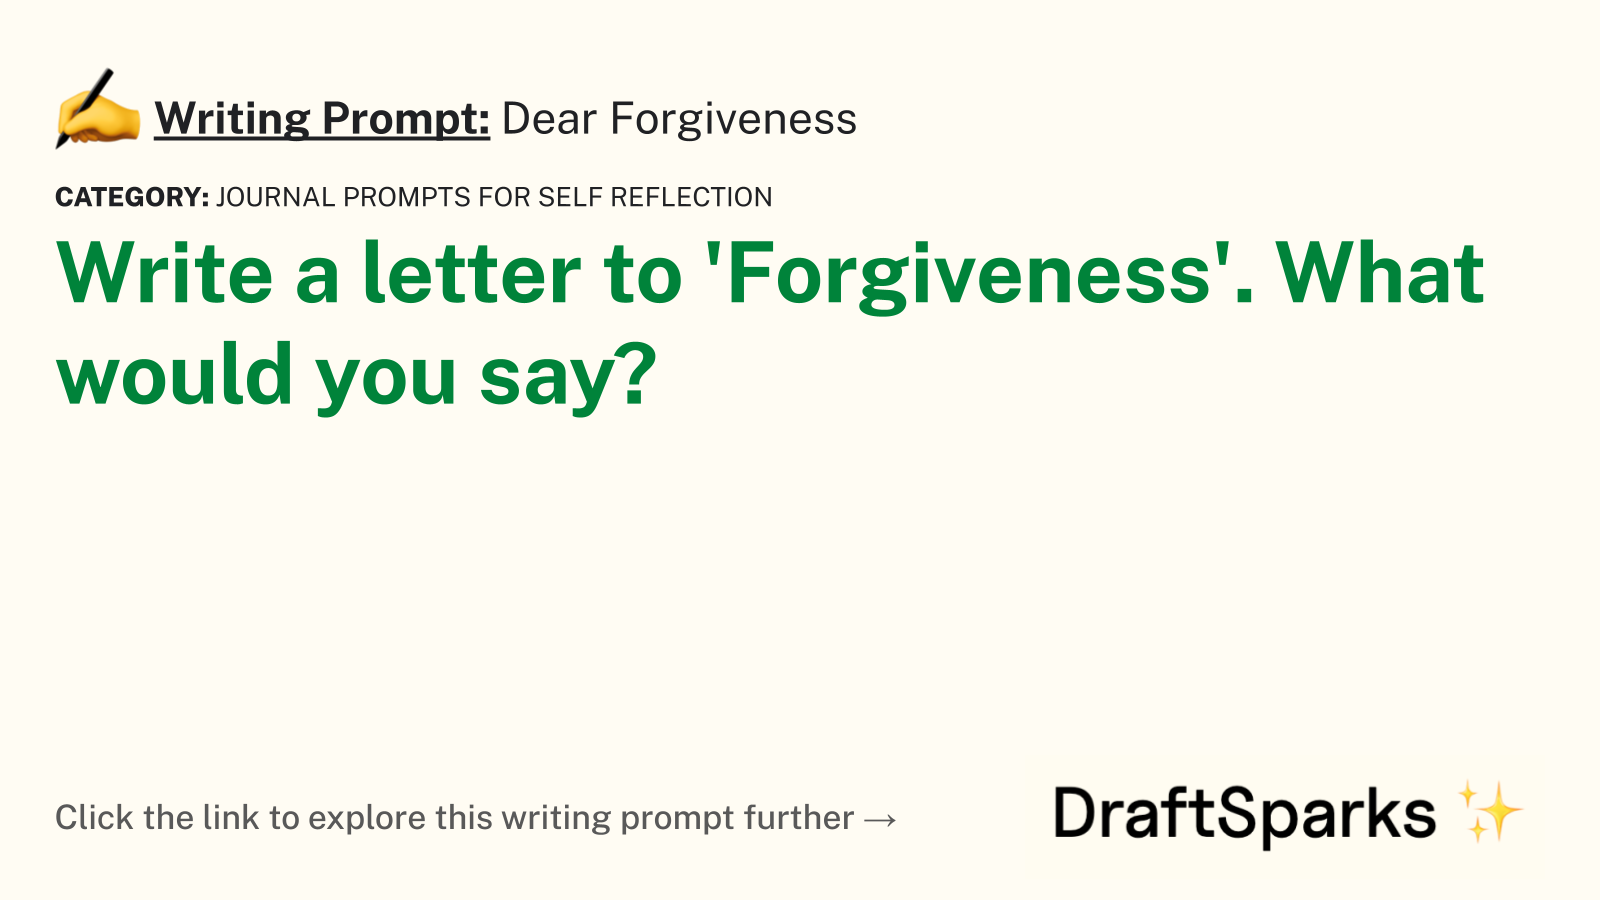 Dear Forgiveness